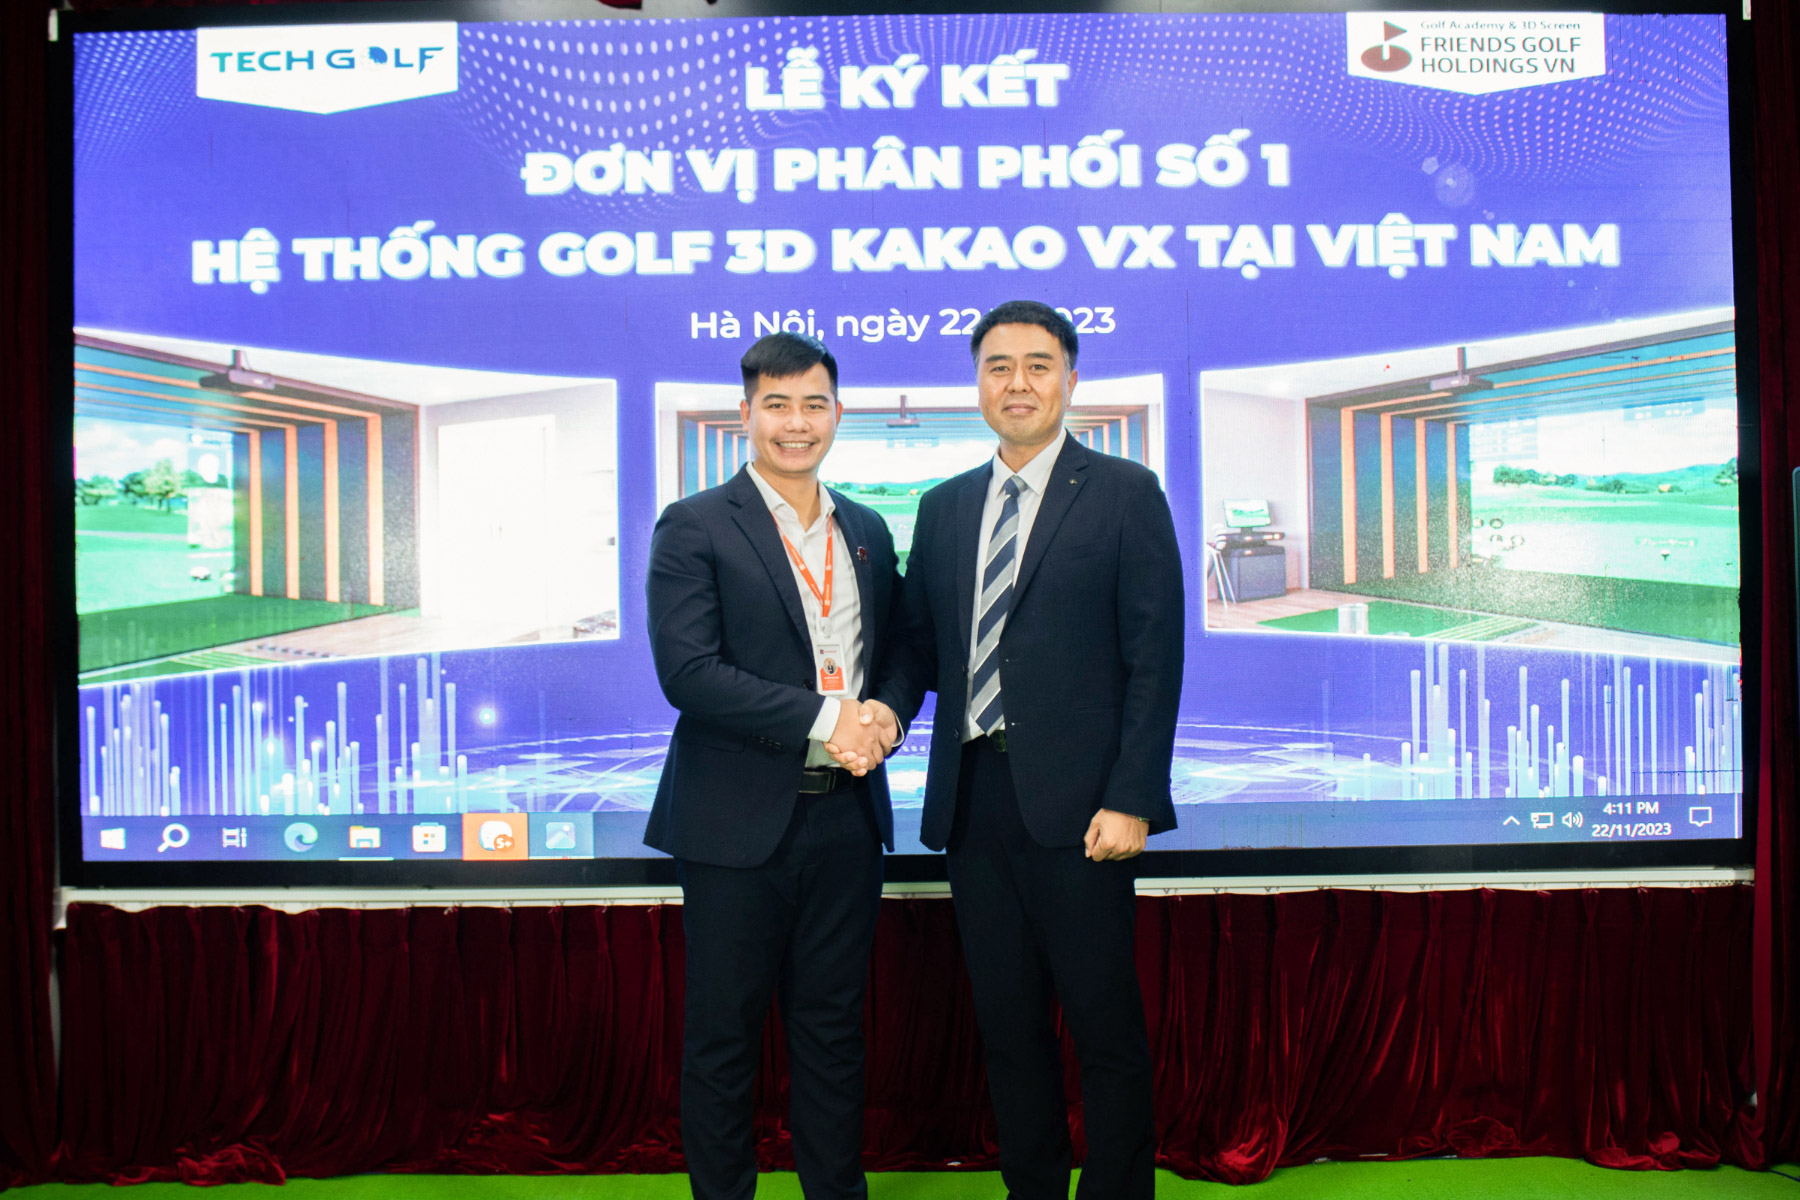 Giám đốc Nguyễn Tuấn Anh và đại diện BLĐ Kakao VX trong buổi lễ ký kết hợp tác